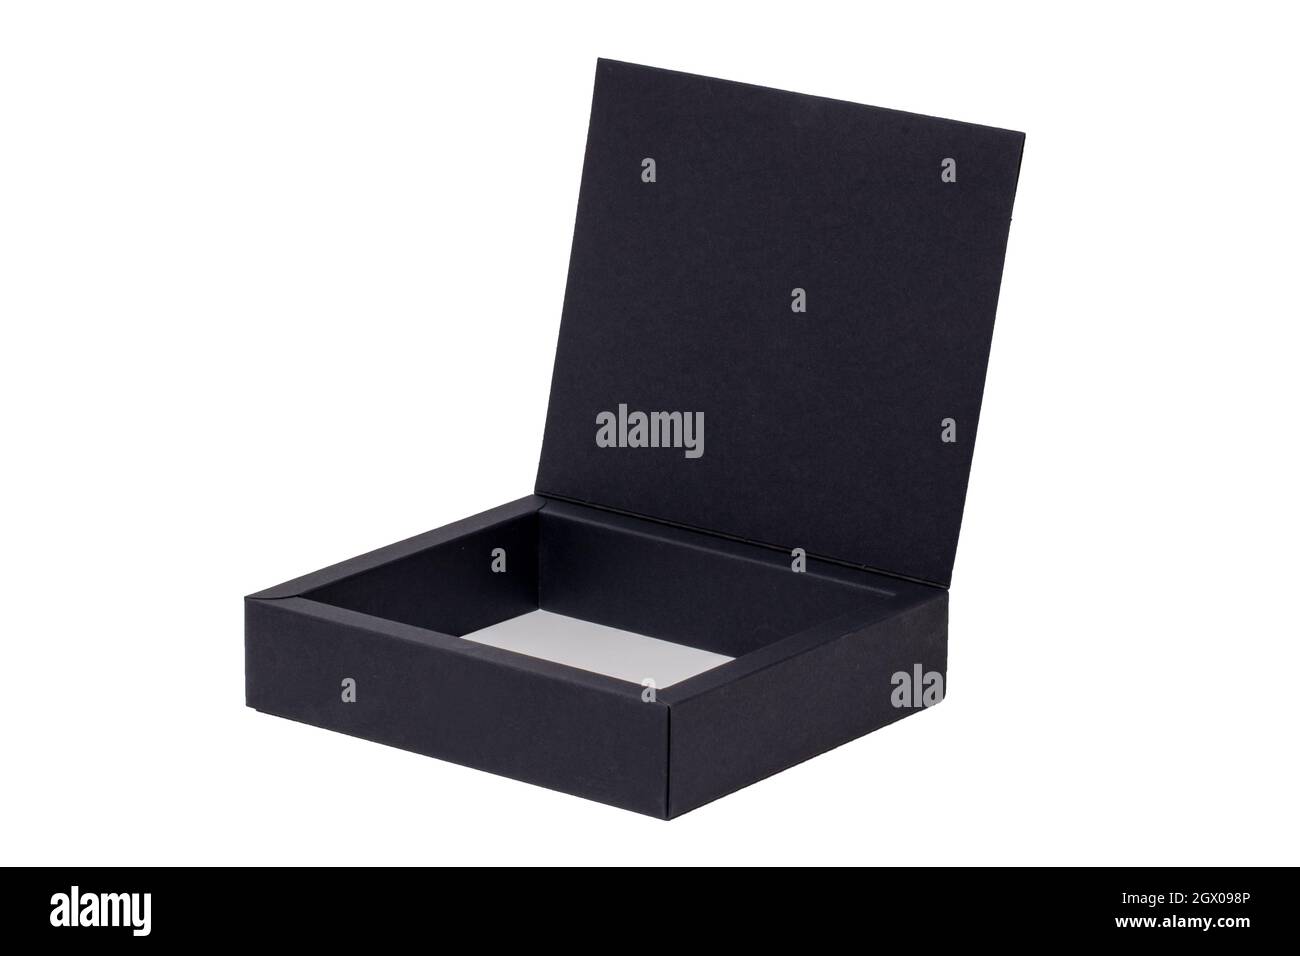 Offener schwarzer Karton oder Karton mit Magnetverschluss isoliert auf  weißem Hintergrund. Makrofotografie Stockfotografie - Alamy